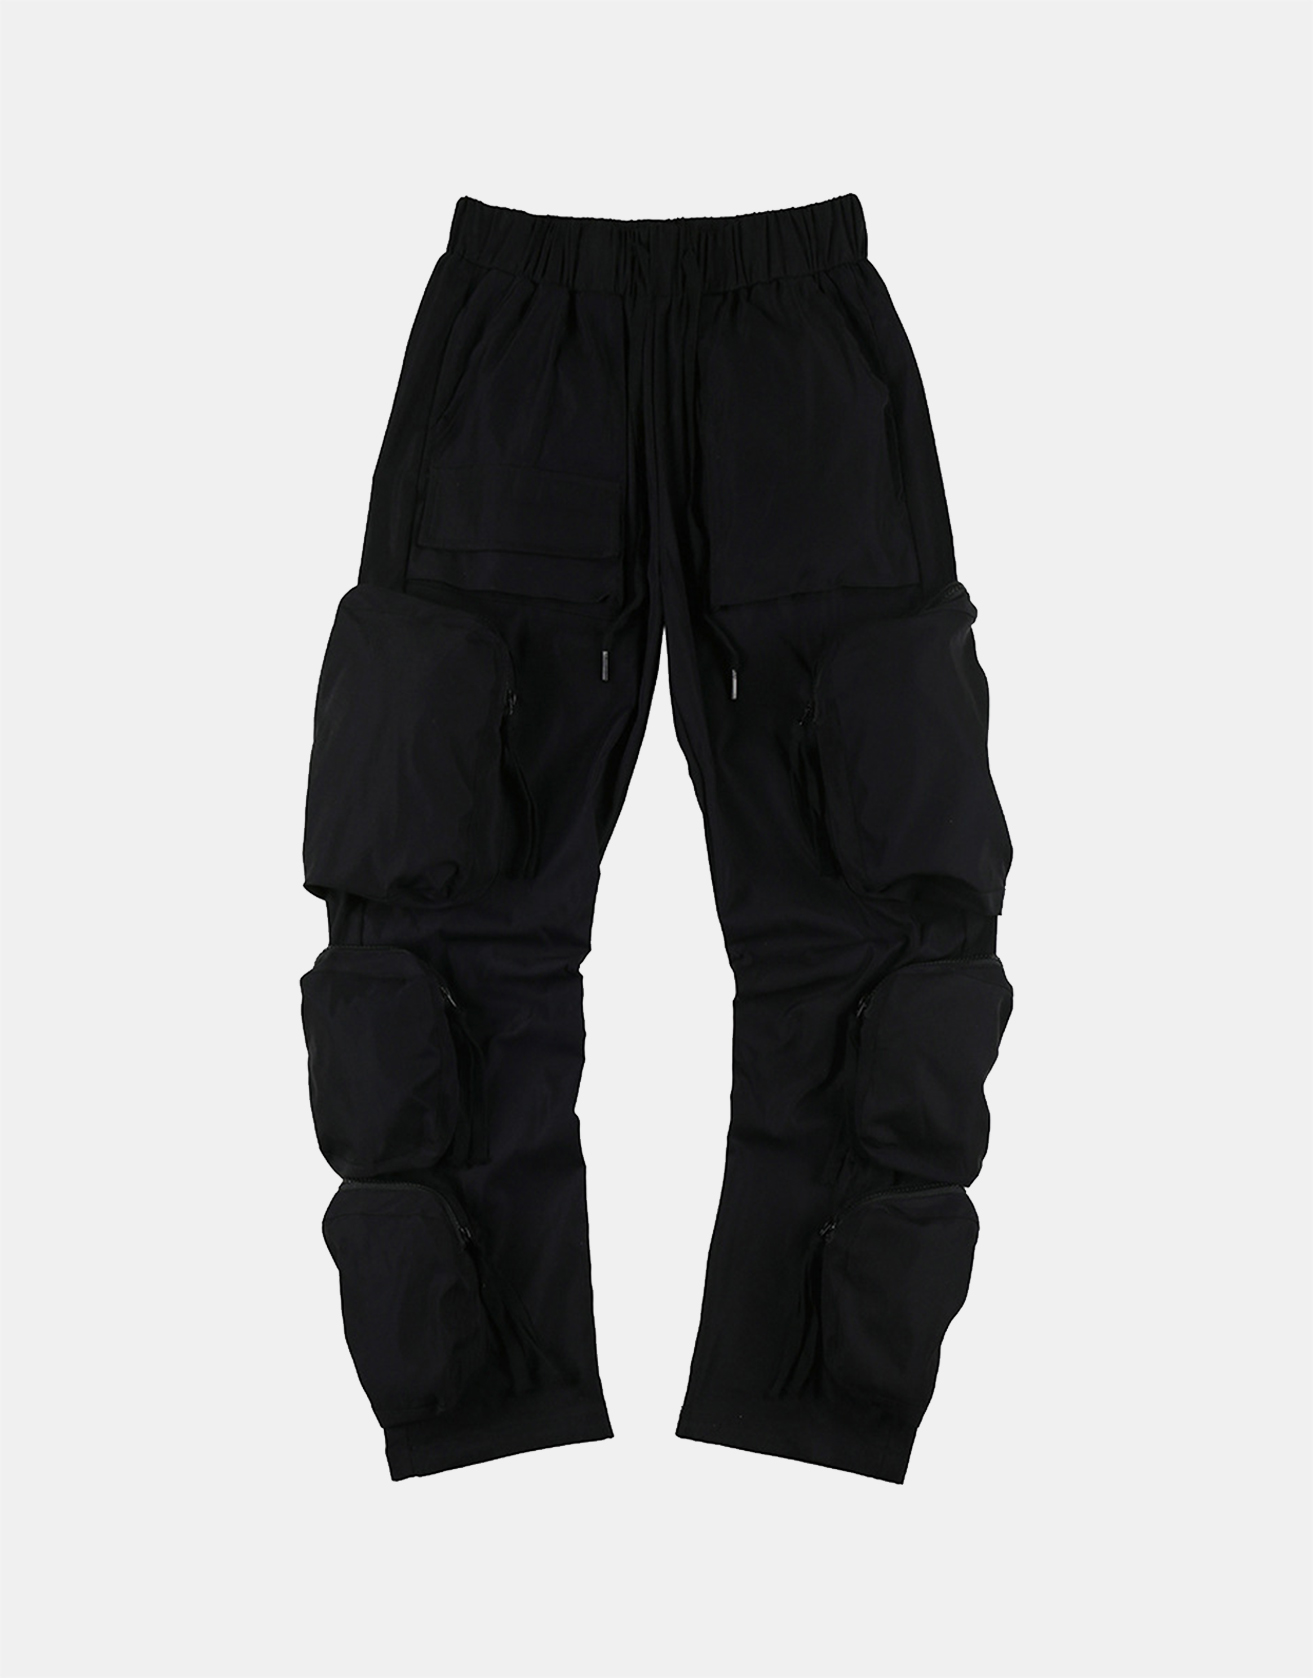 Techwear Zippered Multi-pocket Cargo Pants ... / TECHWEAR CLUB / Techwear